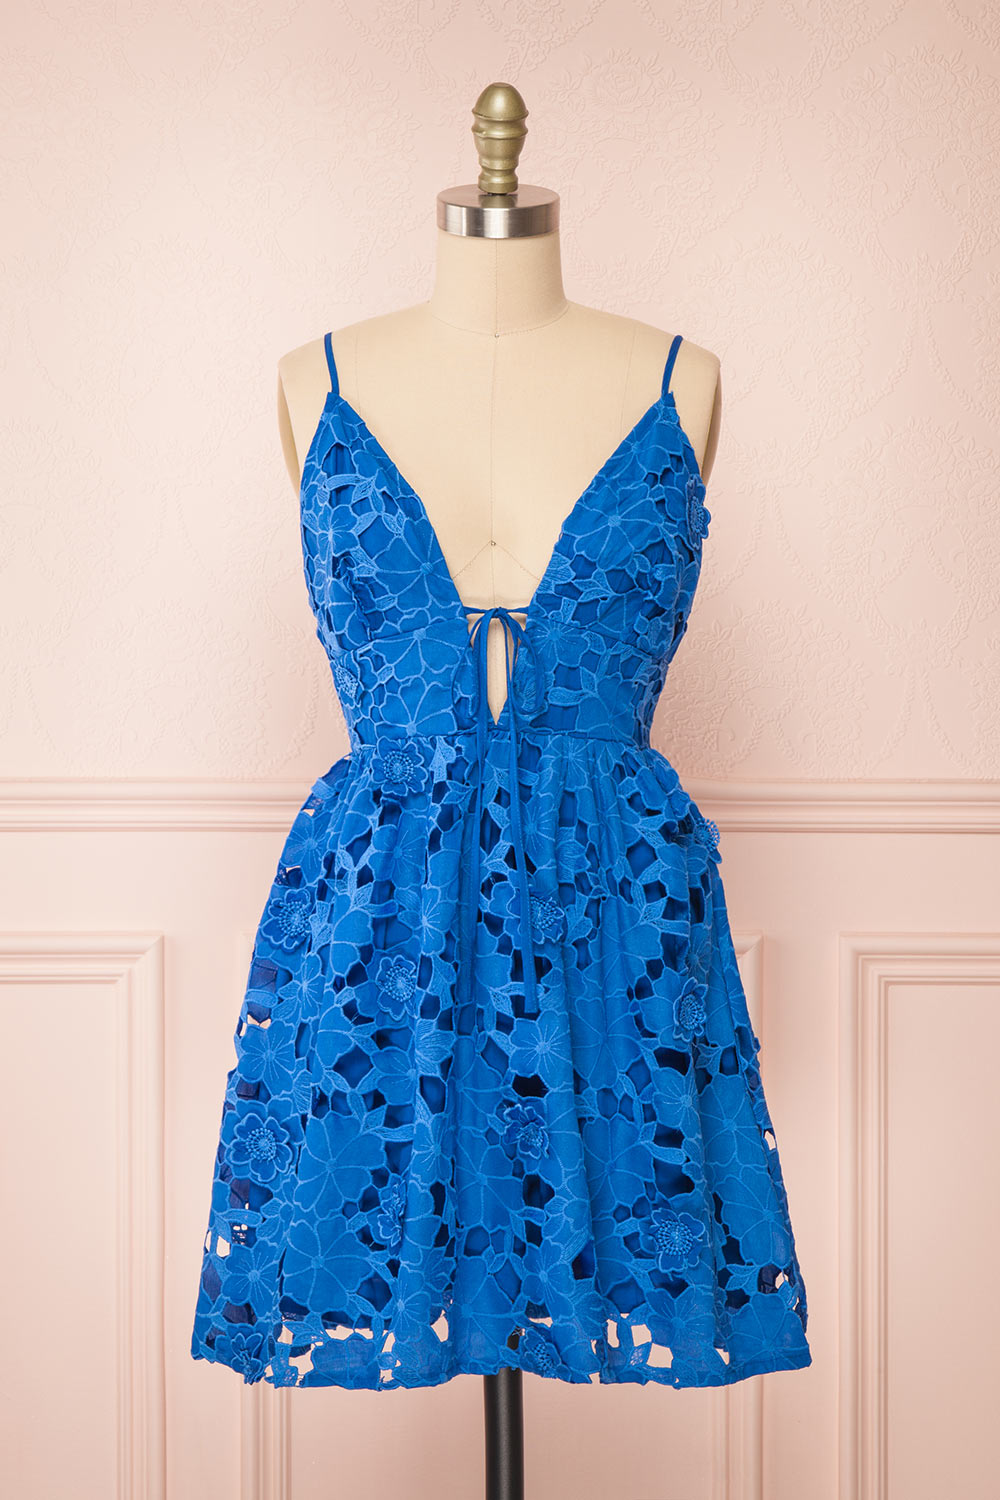 Yvette Short Blue A-Line Lace Dress | Boutique 1861 front view